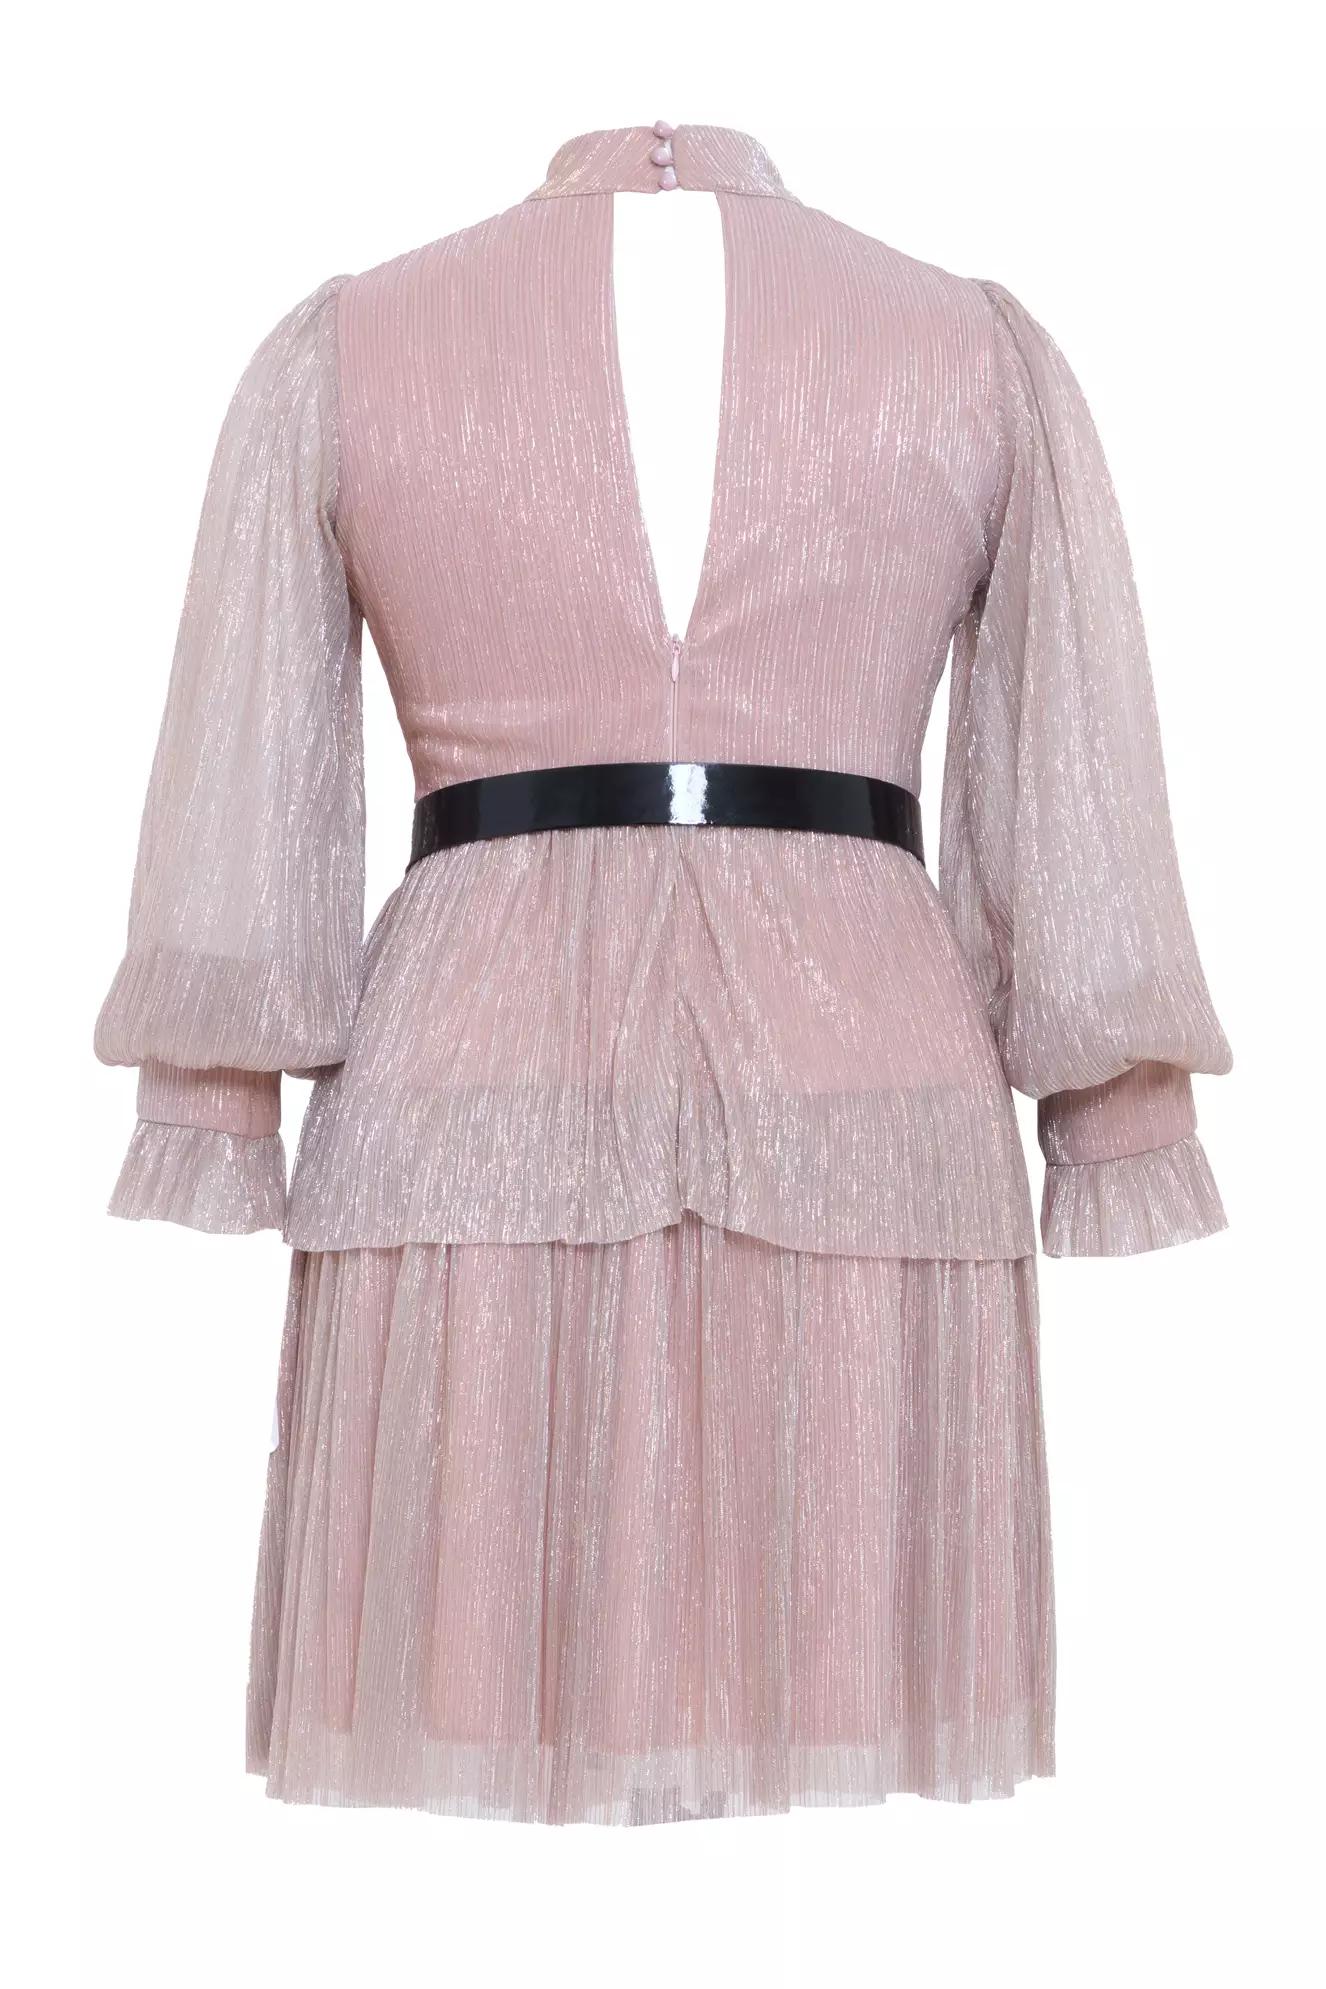 Blush plus size moonlight long sleeve mini dress